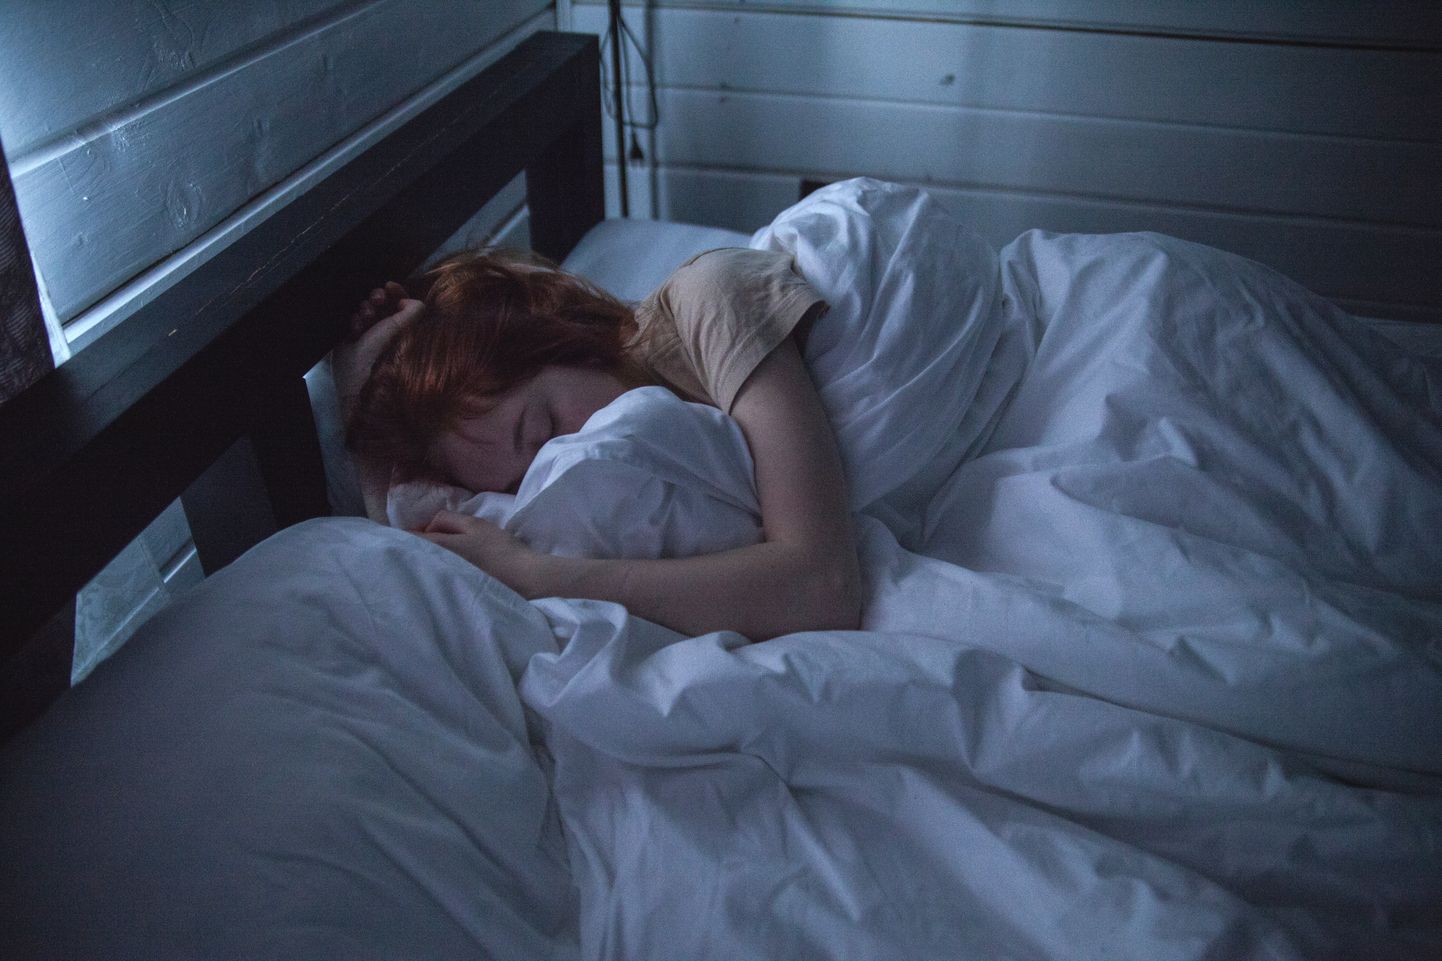 Pilt on illustratiivne: tüdruk voodis.